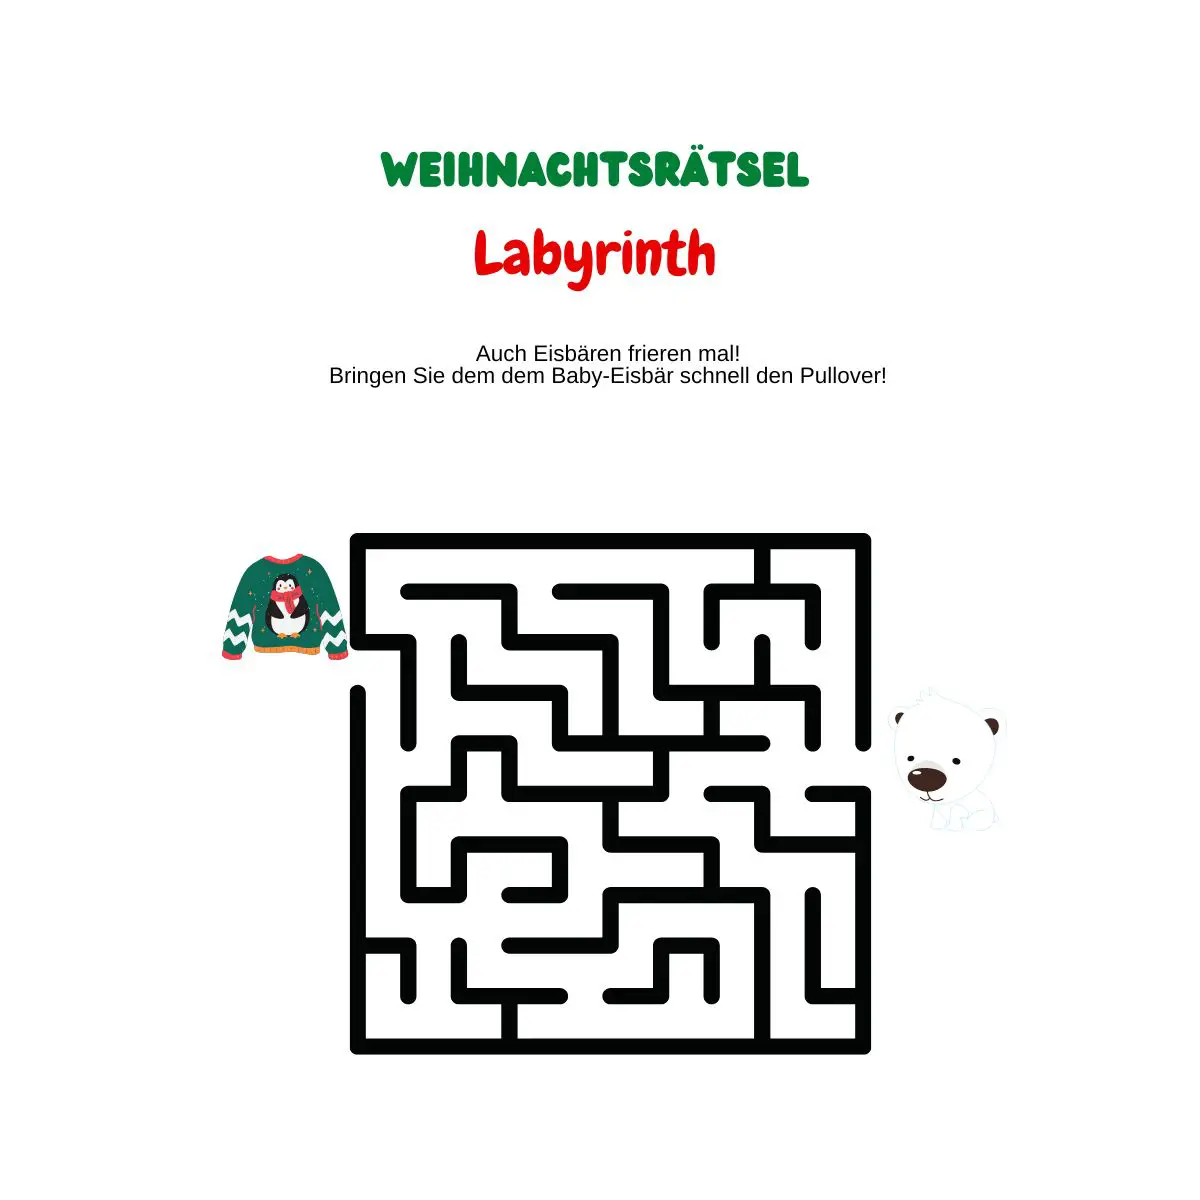 Labyrinth mit Weihnachtspullover und kleinem Eisbär.